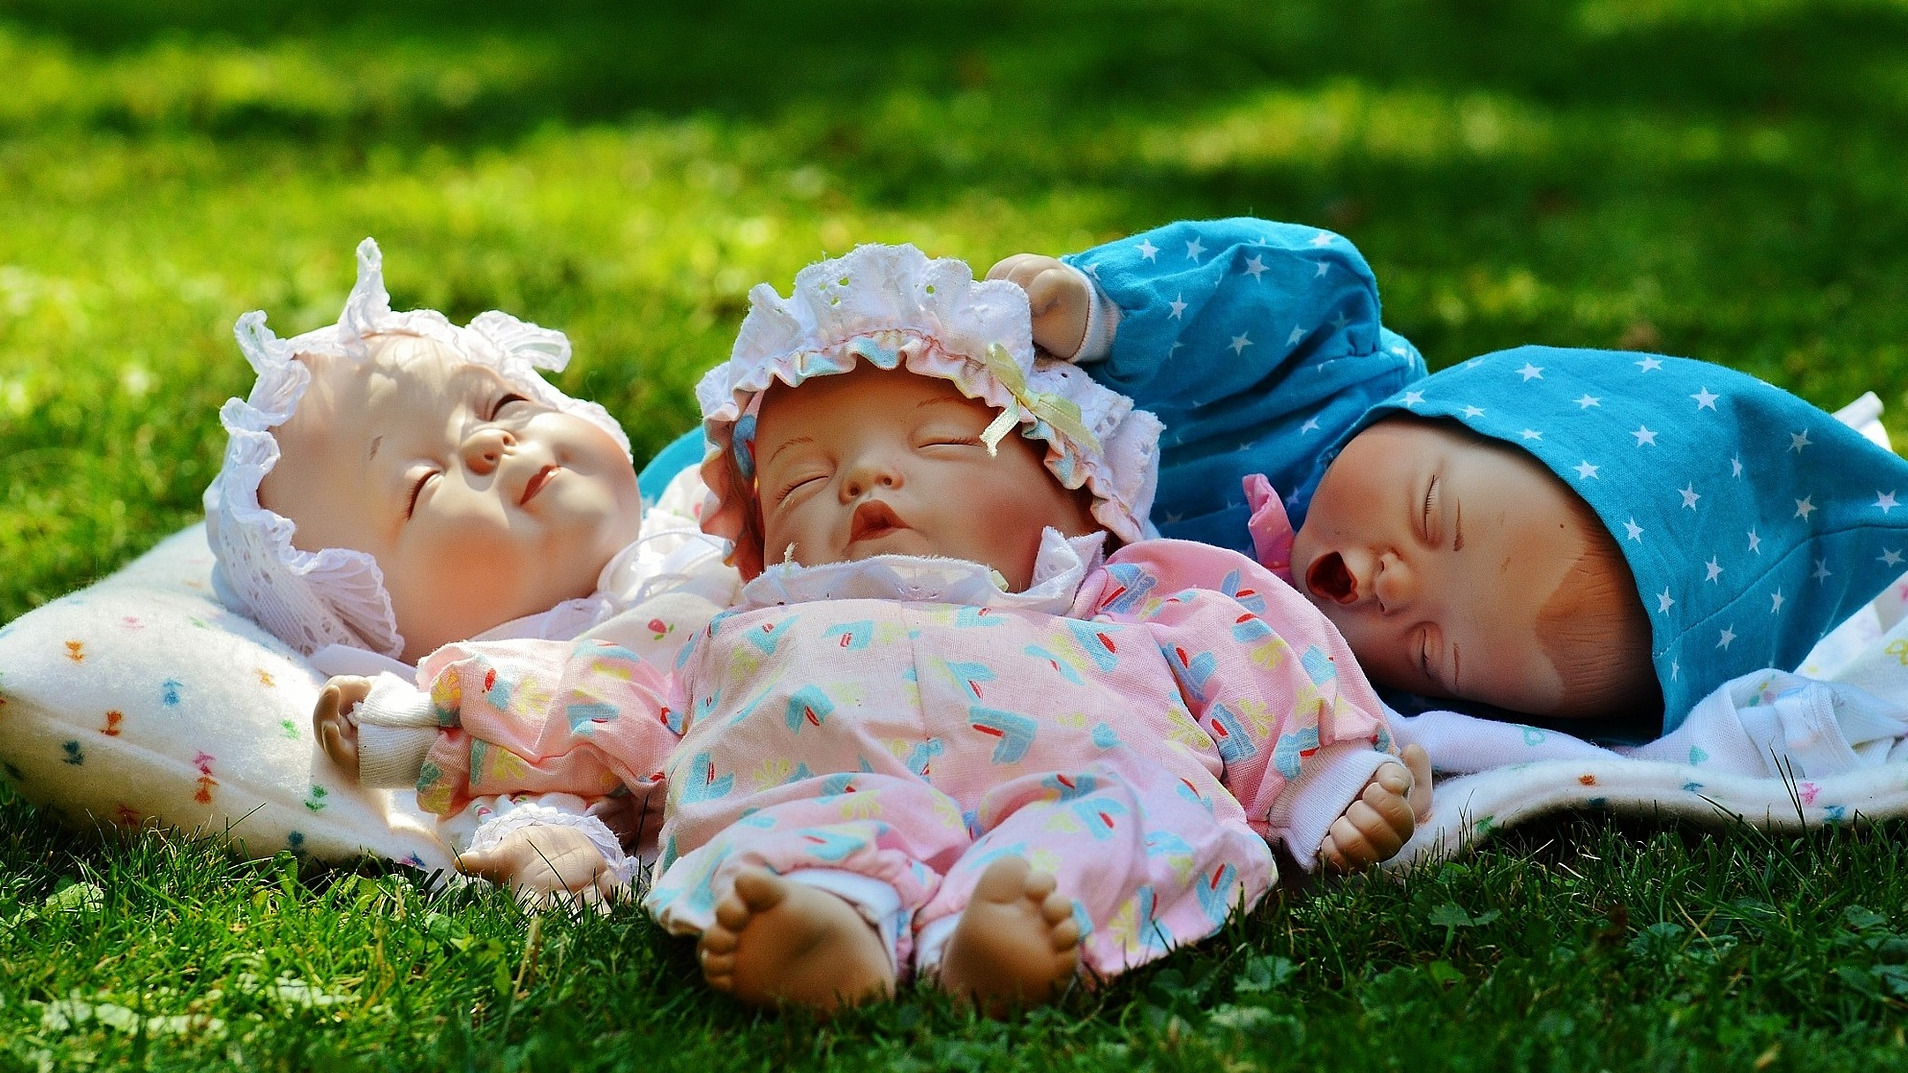 3 happy baby dolls